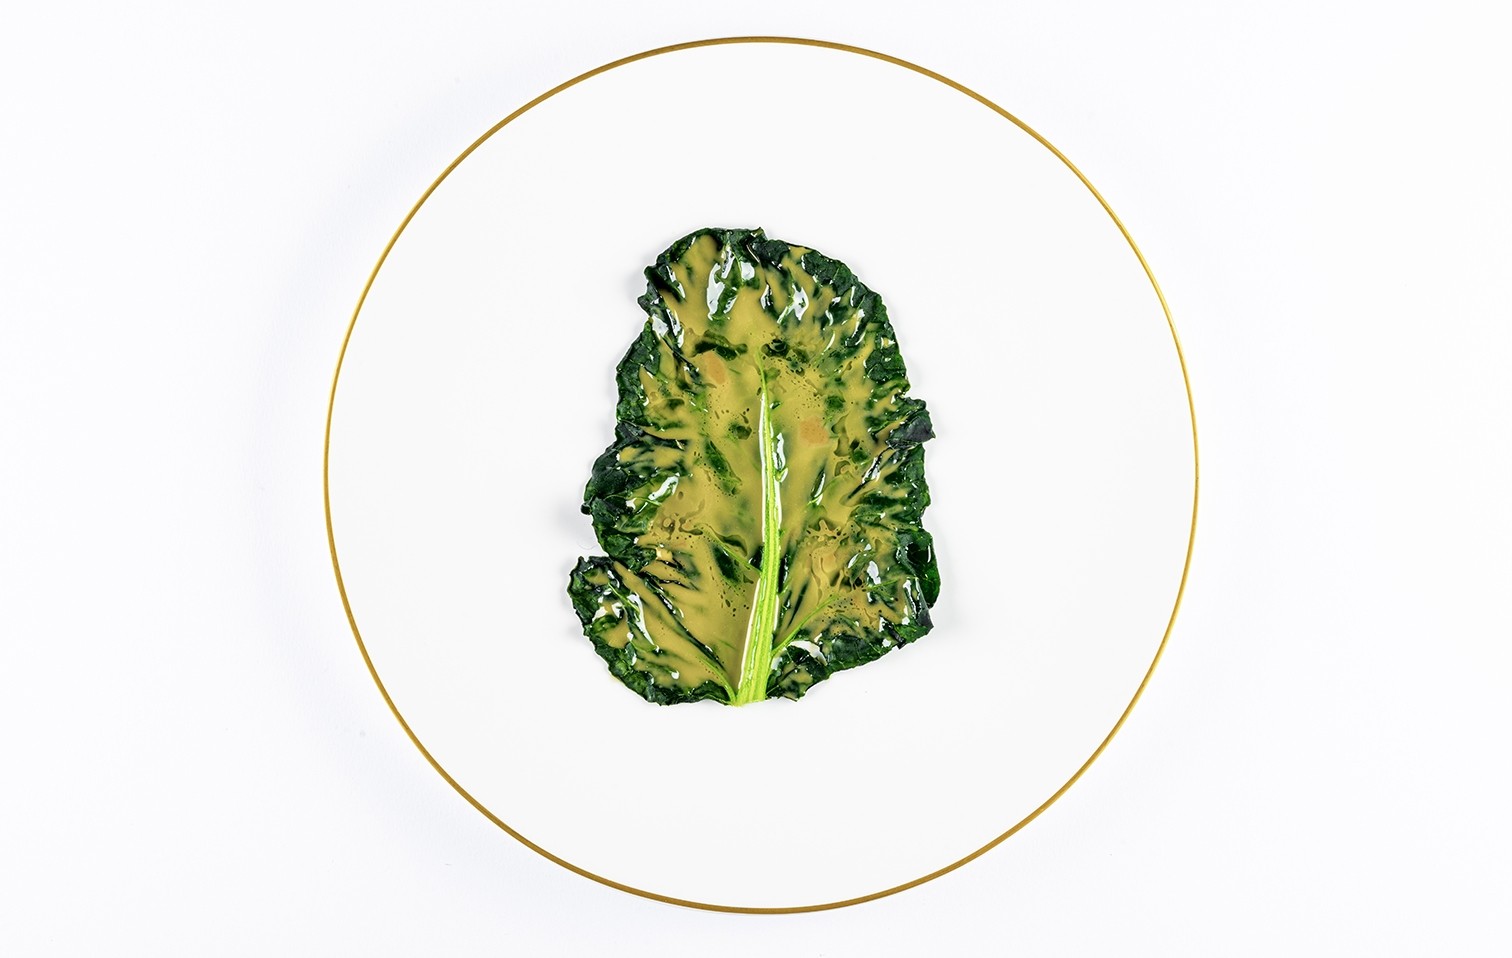 niko romito foglia di broccolo e anice copertina scheda chef